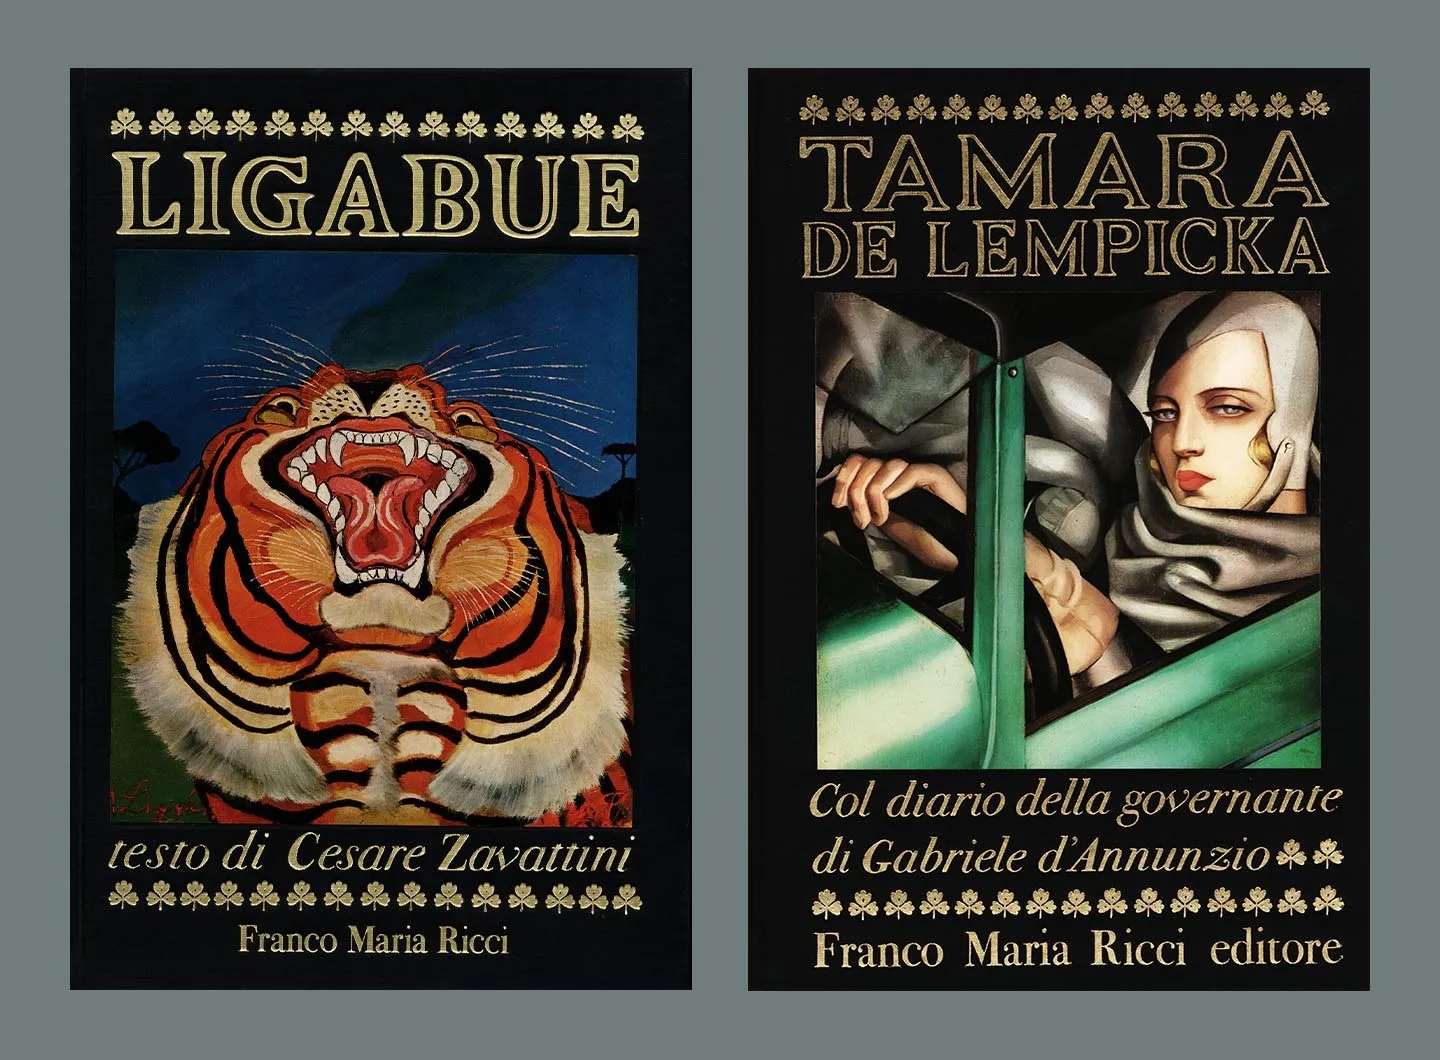 Covers for the Ligabue books and Tamara de Lempicka